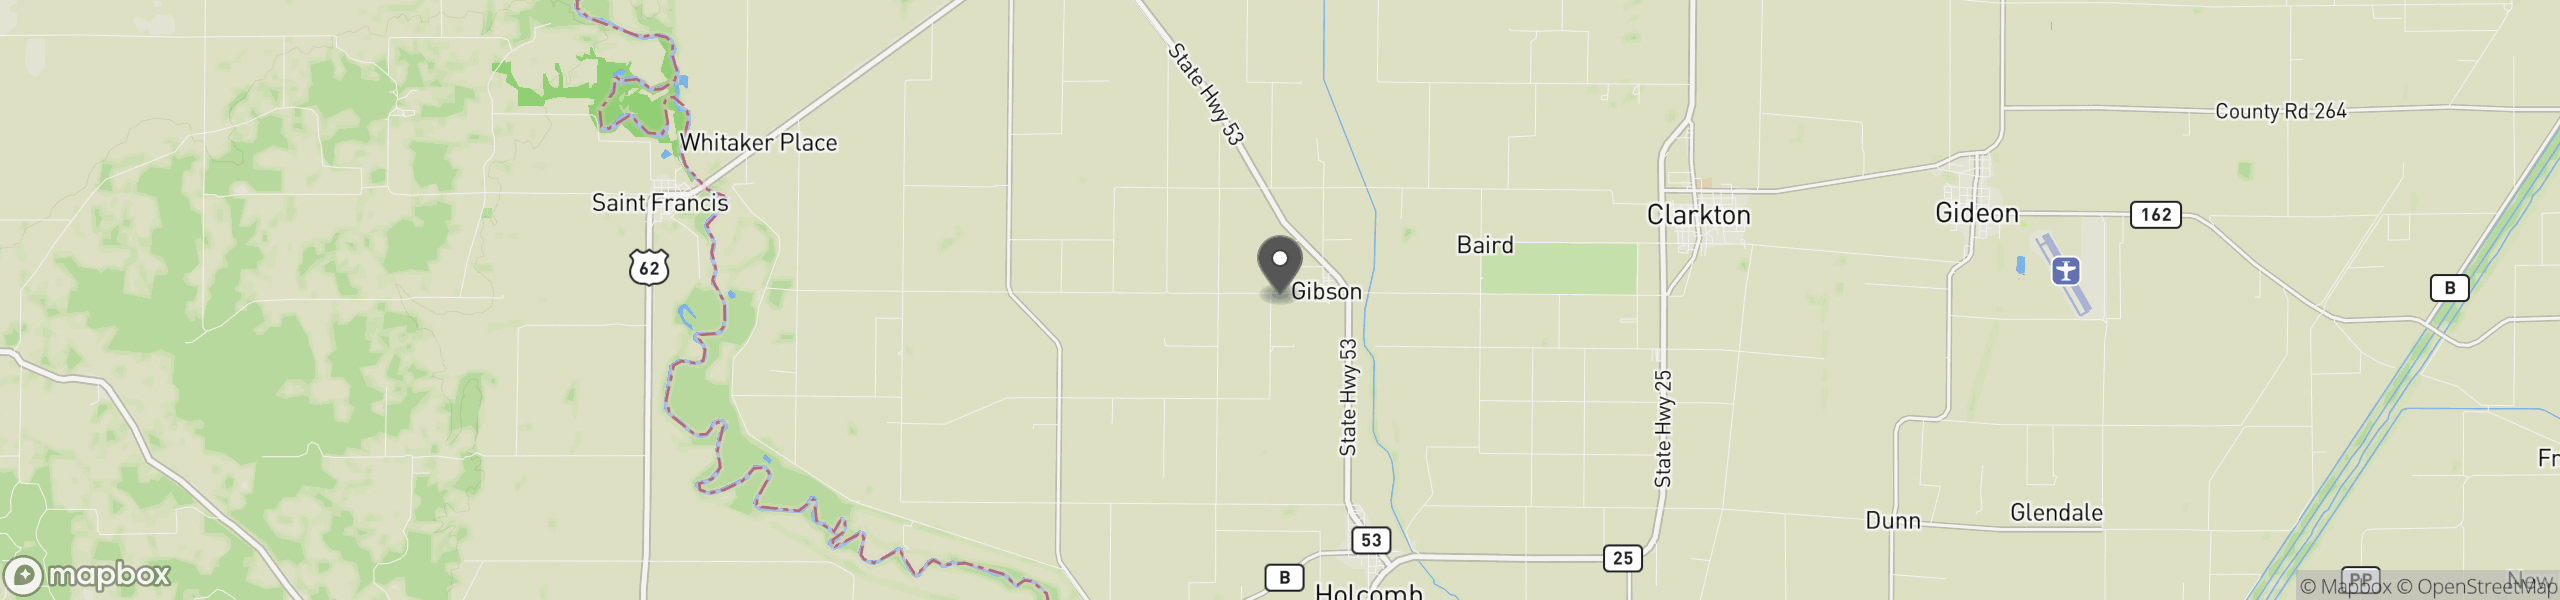 Gibson, MO 63847